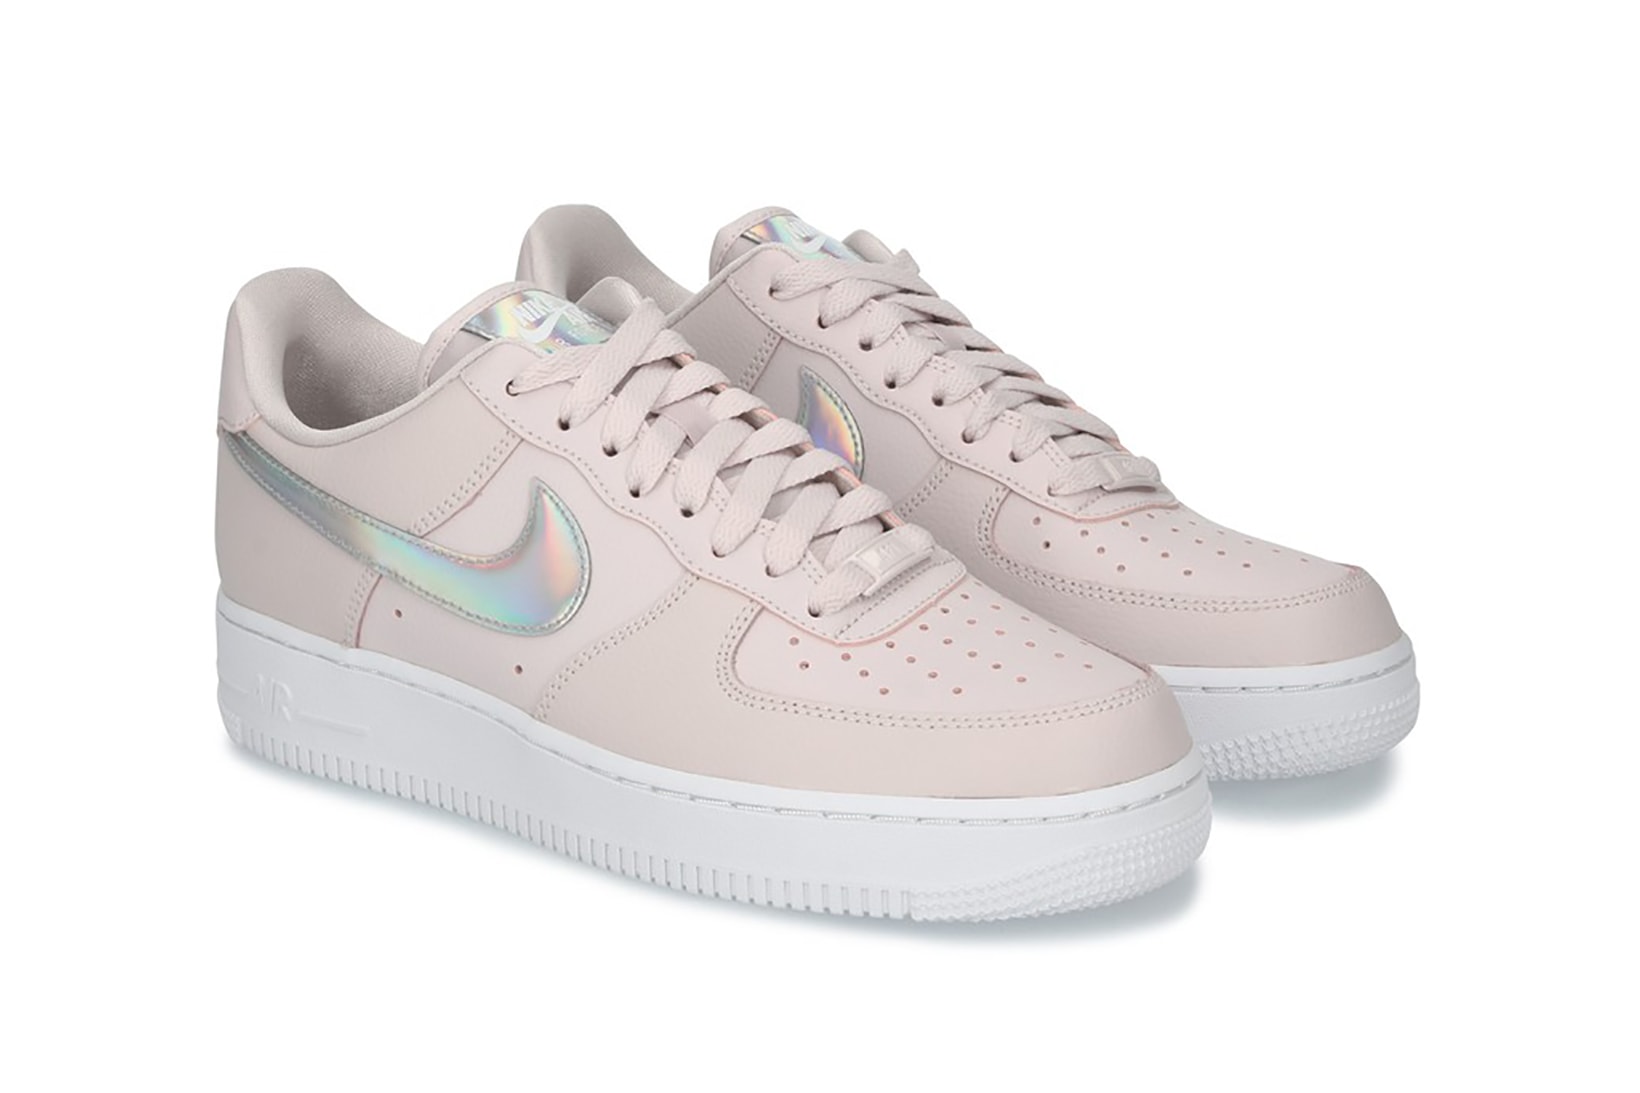 nike air force 1 07 womens sneakers pastel pink silver metallic colorway barely rose sneakerhead footwear shoes